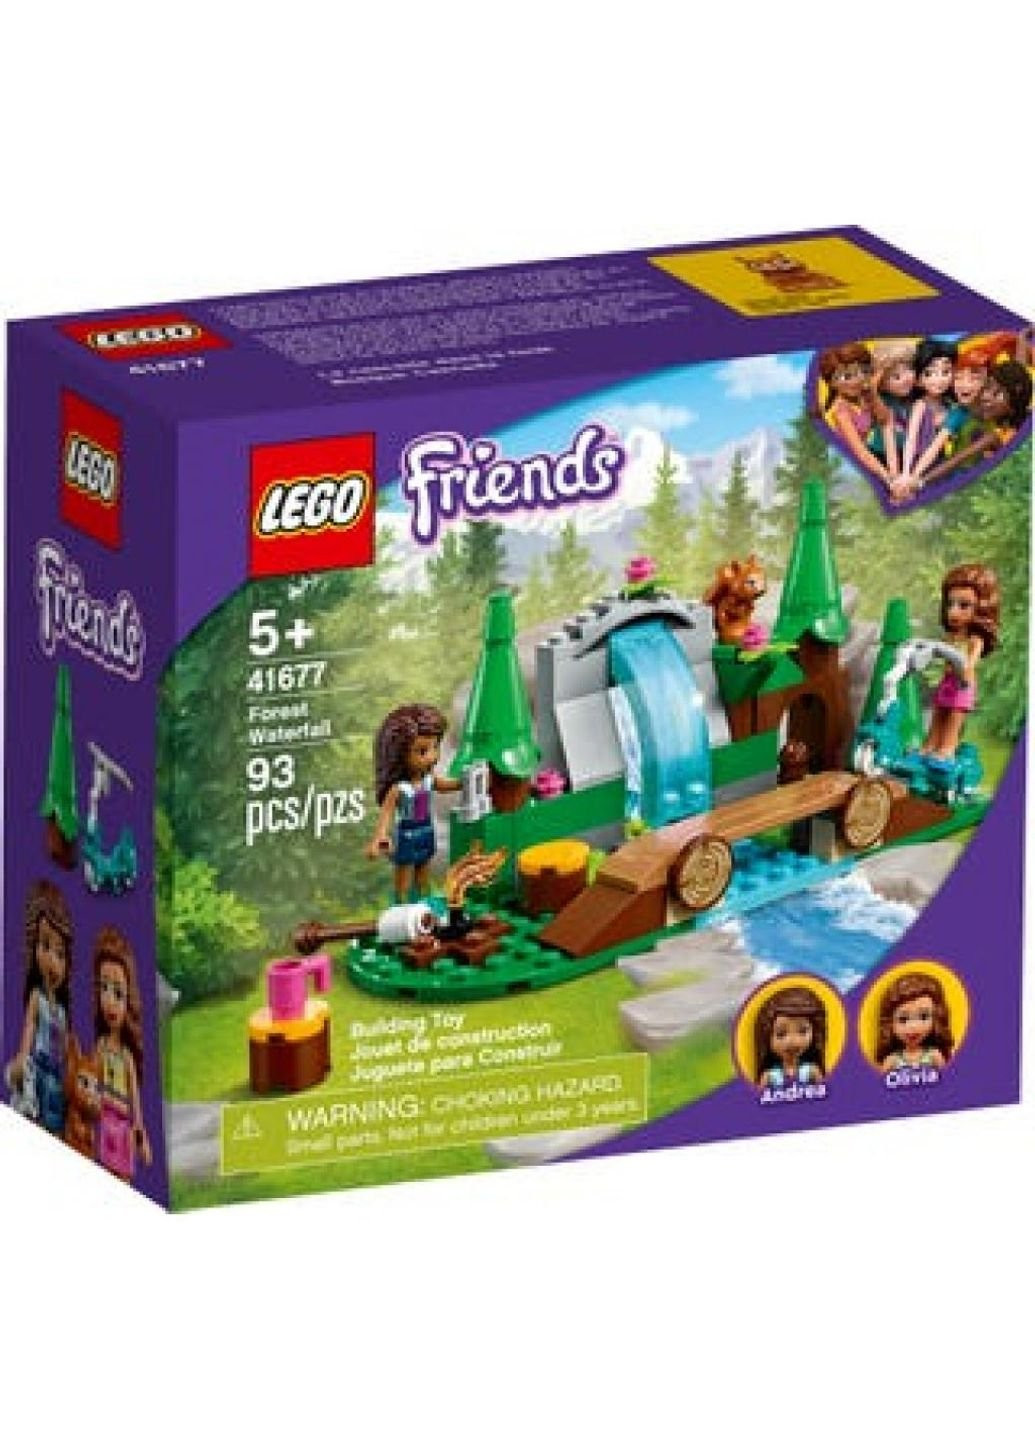 Конструктор (41677) Lego friends лесной водопад 93 детали (249597639)